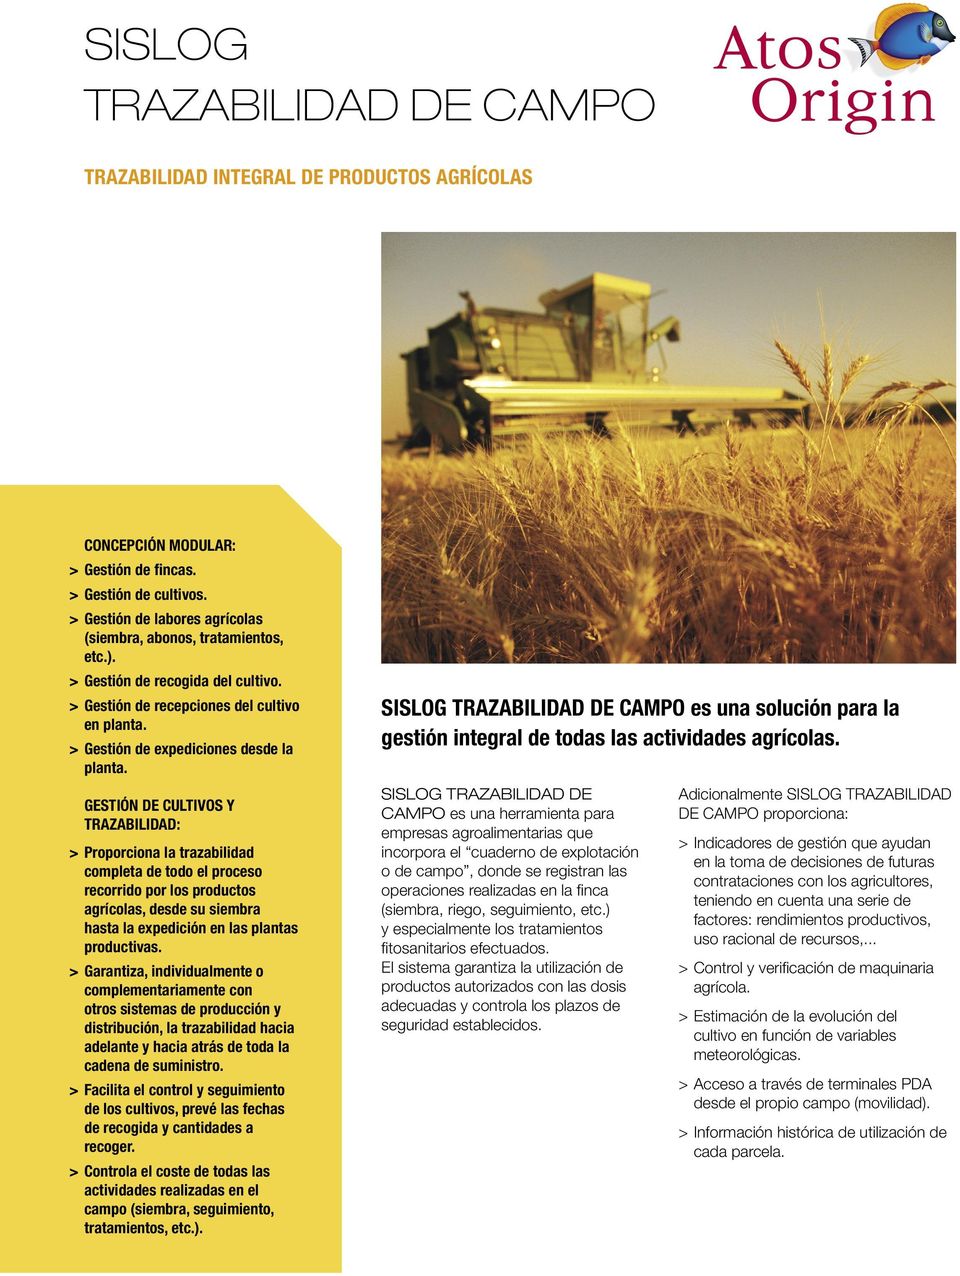 DE CULTIVOS Y TRAZABILIDAD: > Proporciona la trazabilidad completa de todo el proceso recorrido por los productos agrícolas, desde su siembra hasta la expedición en las plantas productivas.